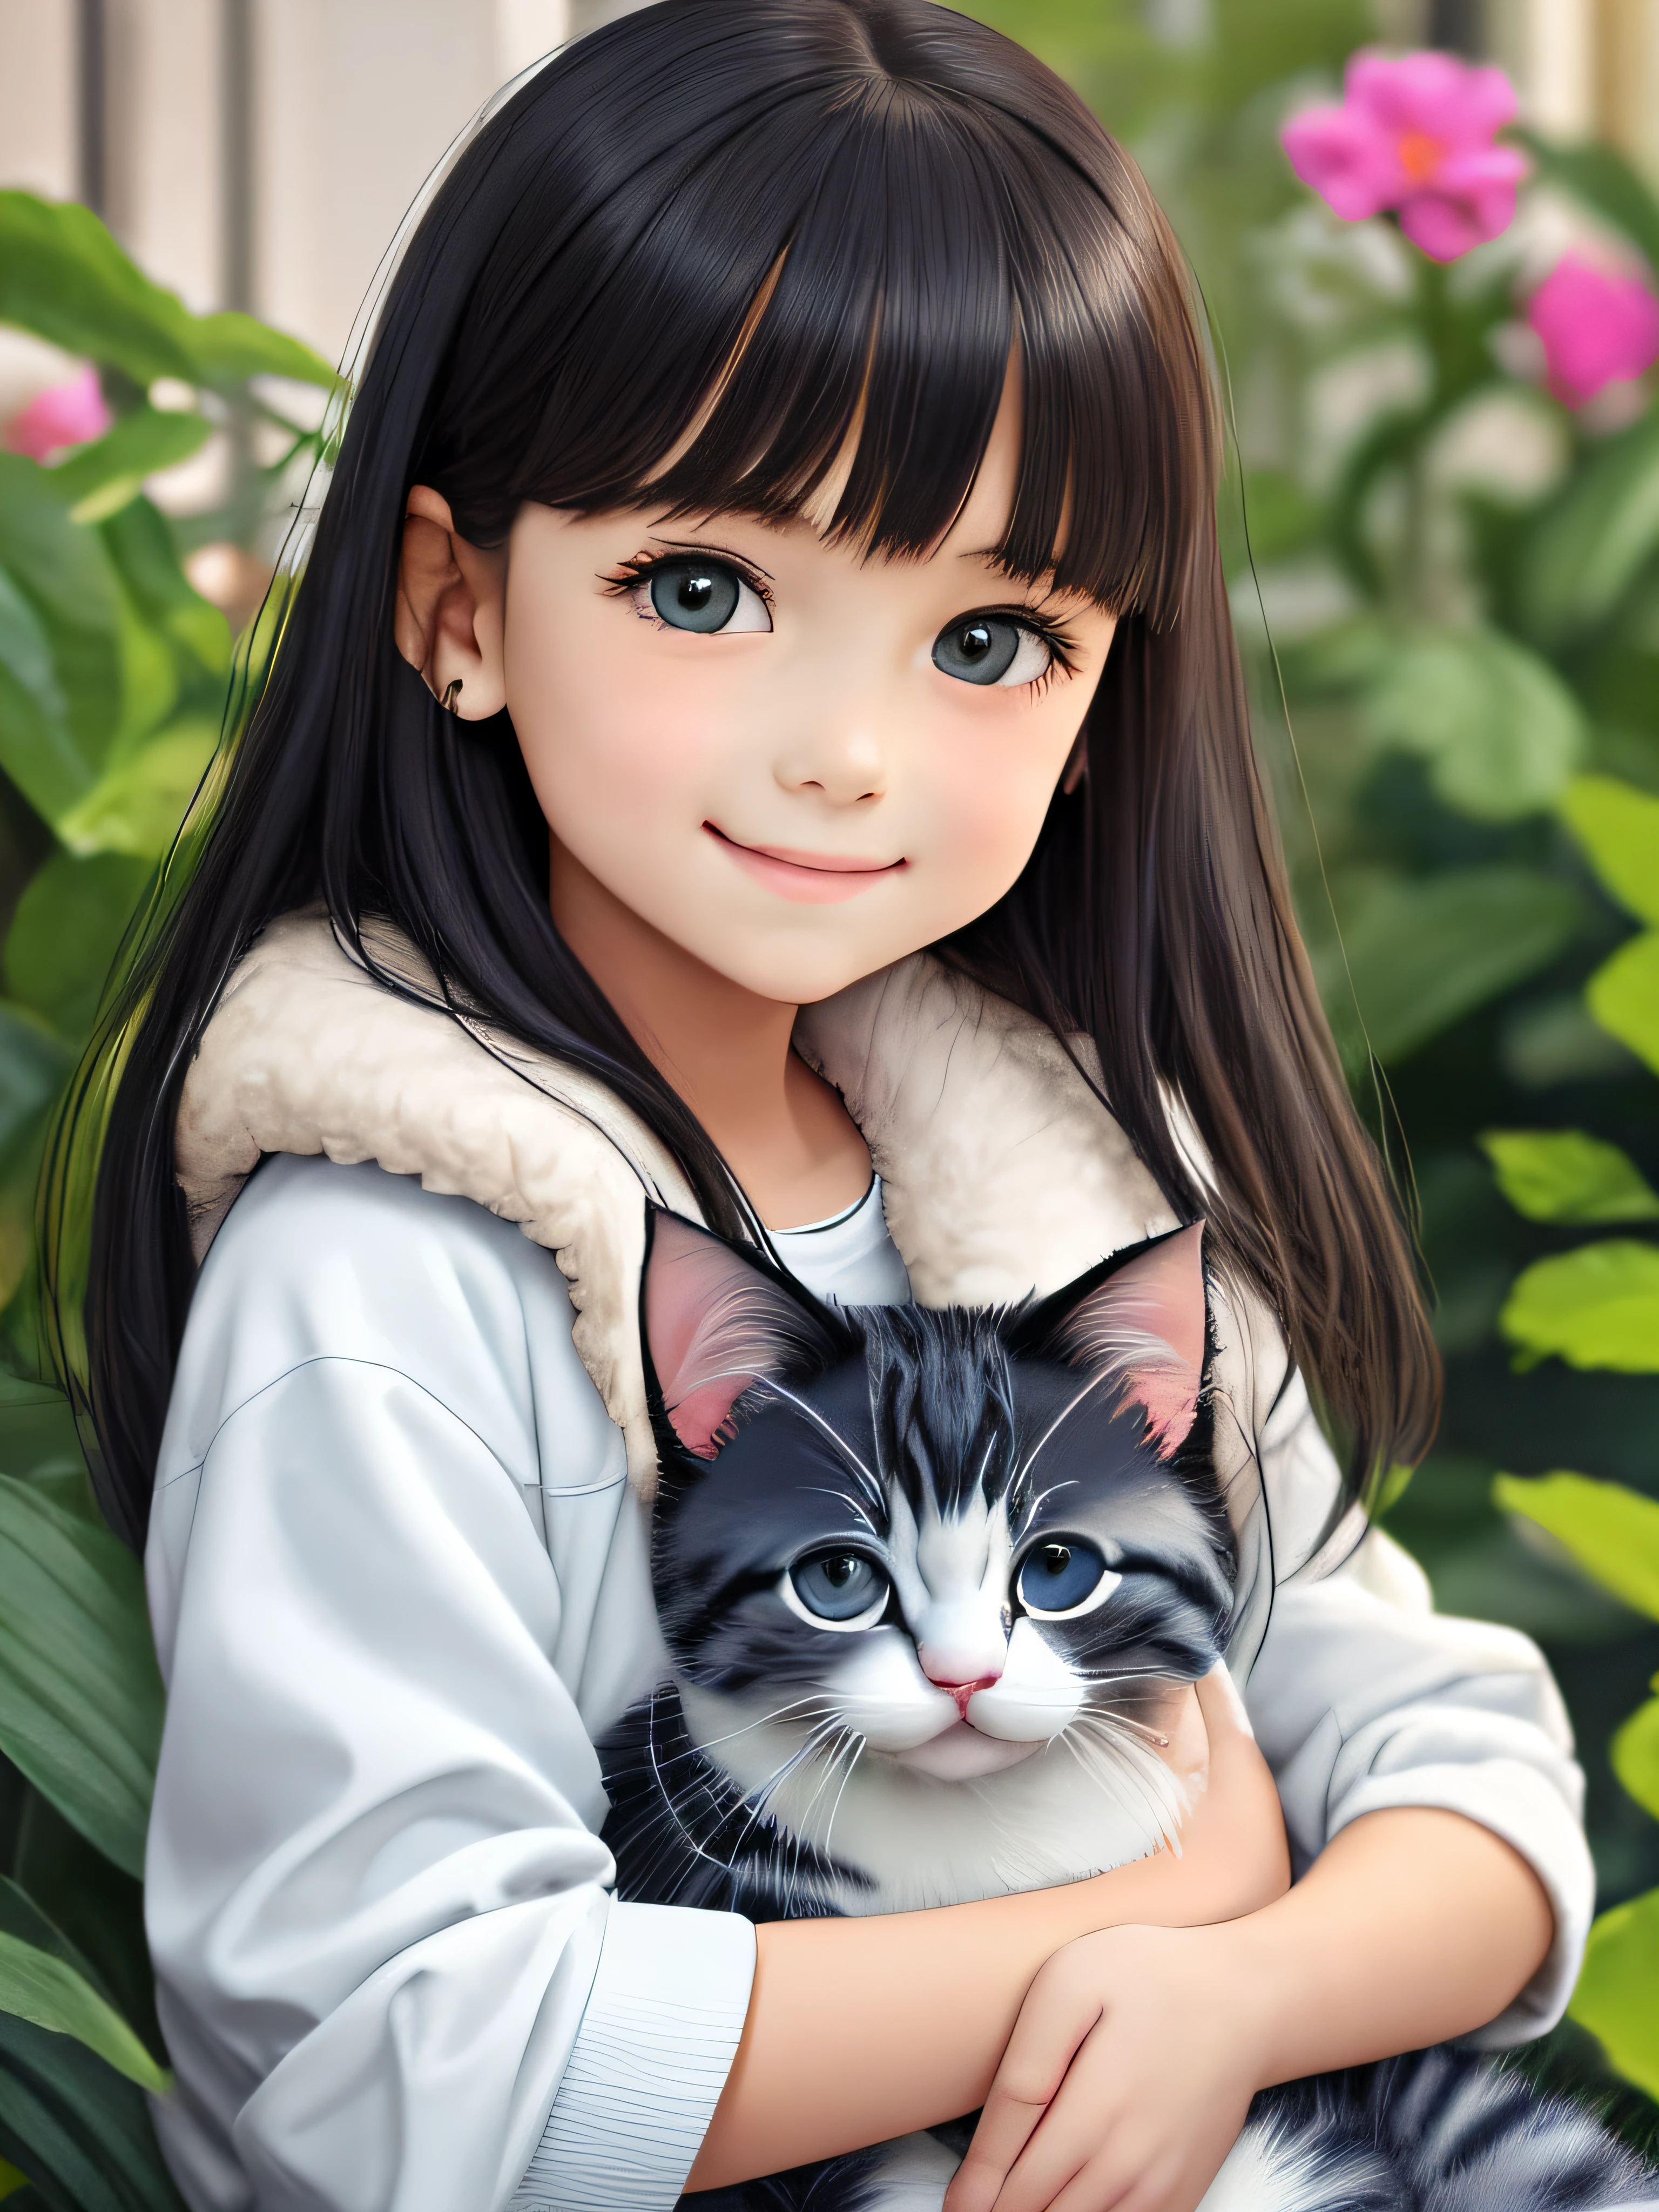 一名 8 歲白人膚色女孩，留著黑色長直髮和瀏海, 有榛子眼睛, 以真實的色調微笑, 穿著蓬鬆的白色夾克，腿上抱著一隻可愛的灰色小貓, 在一個被美麗花園包圍的小房子裡